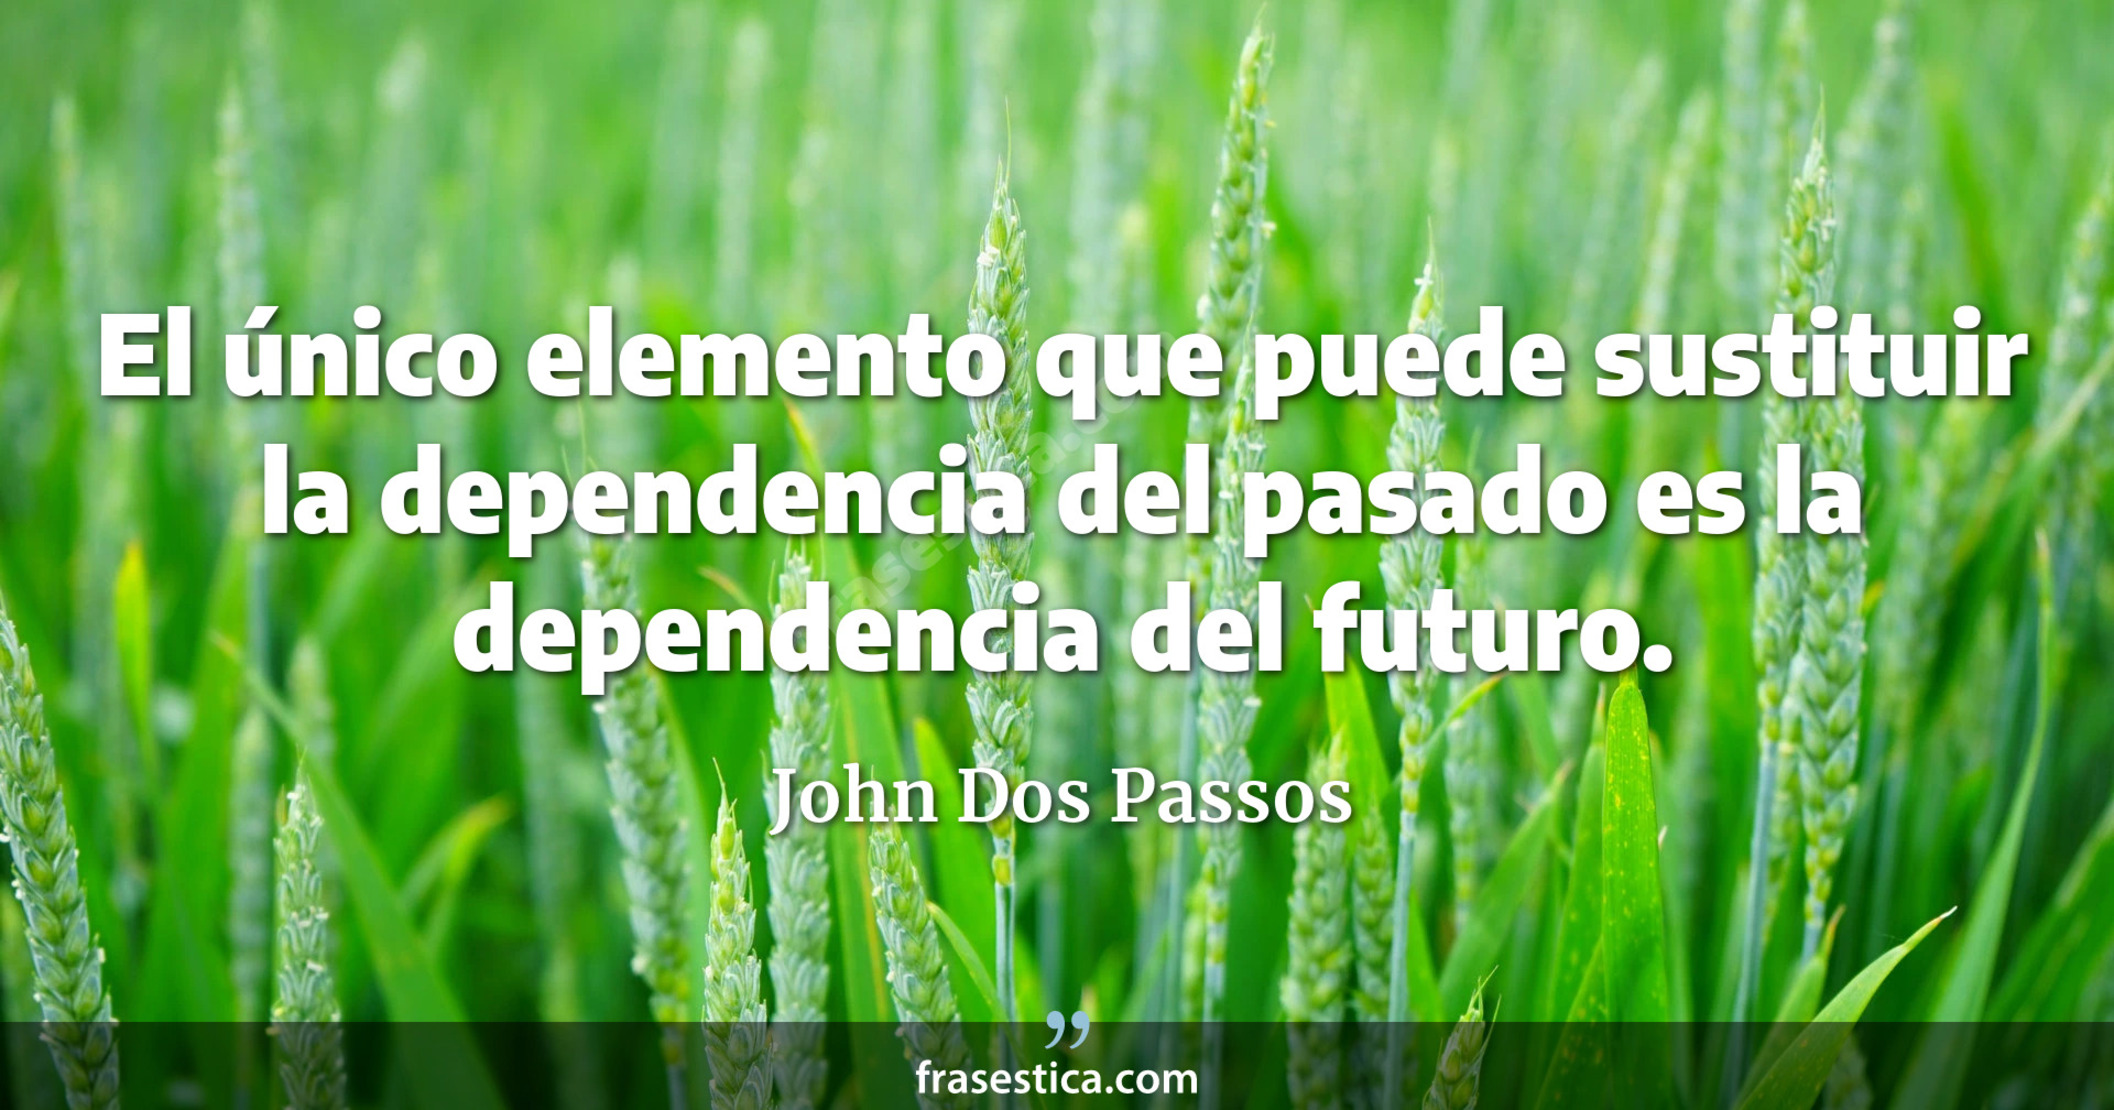 El único elemento que puede sustituir la dependencia del pasado es la dependencia del futuro. - John Dos Passos